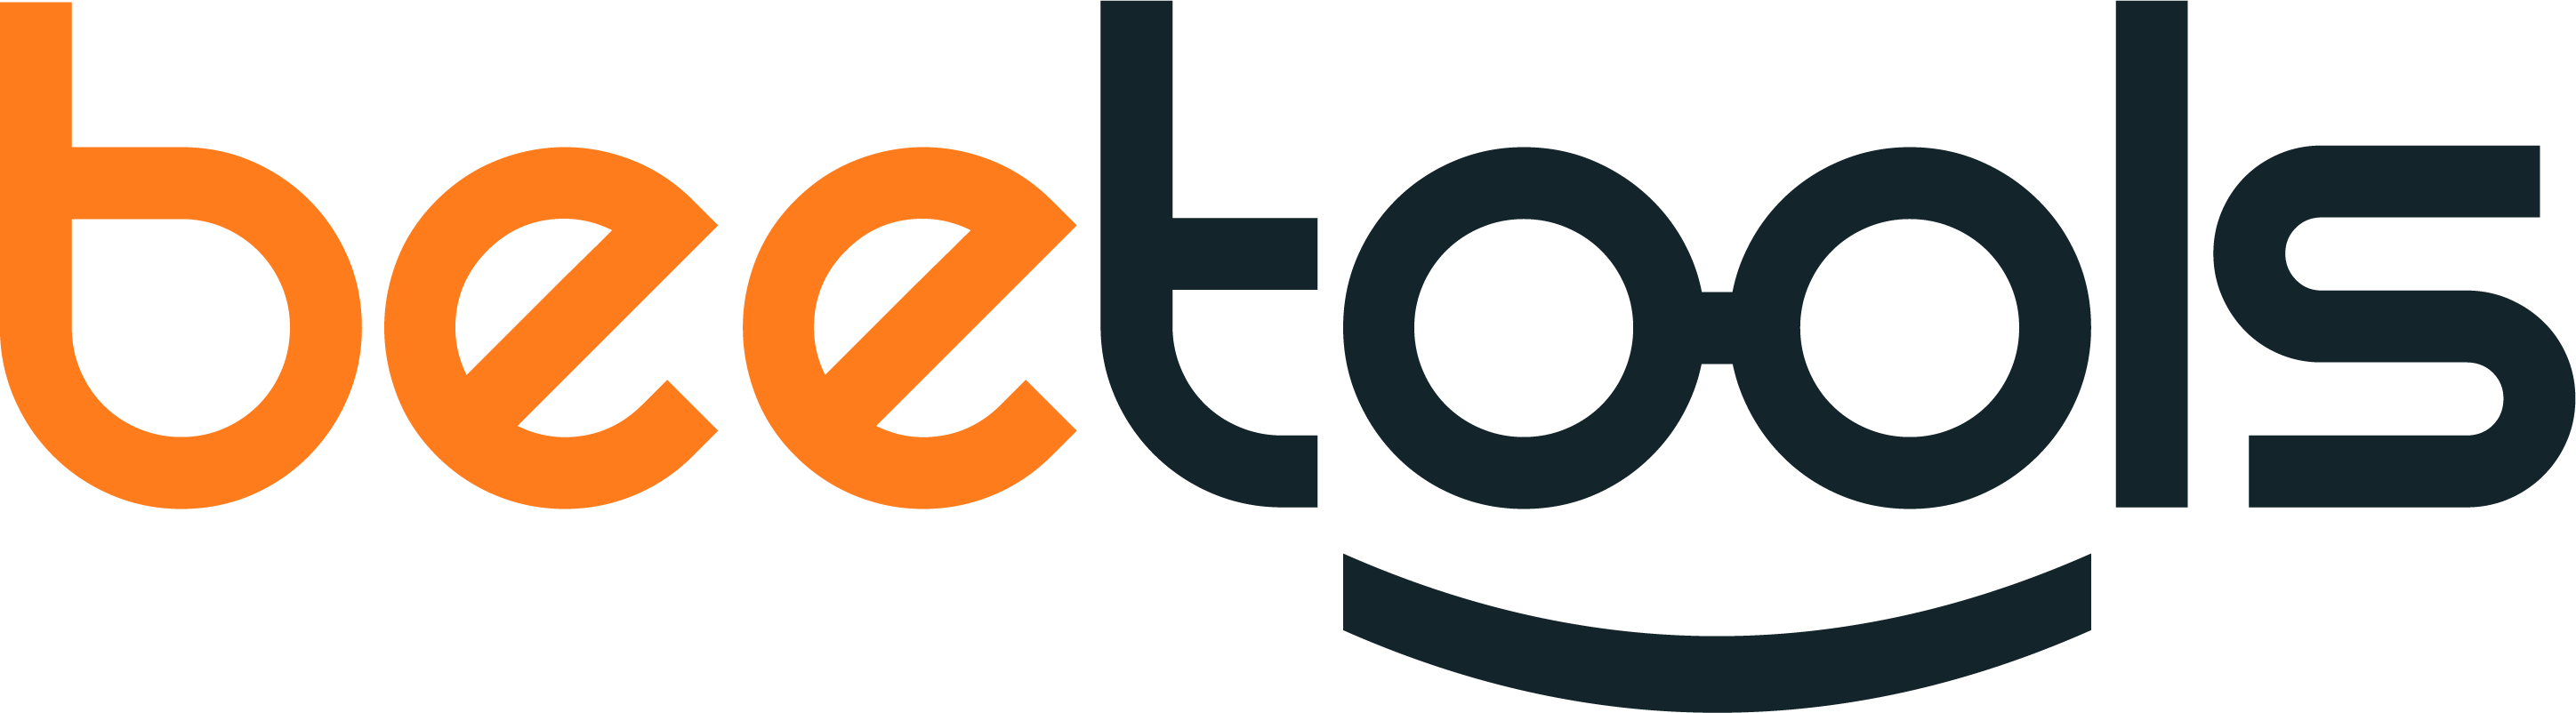 Logo da empresa Beetools